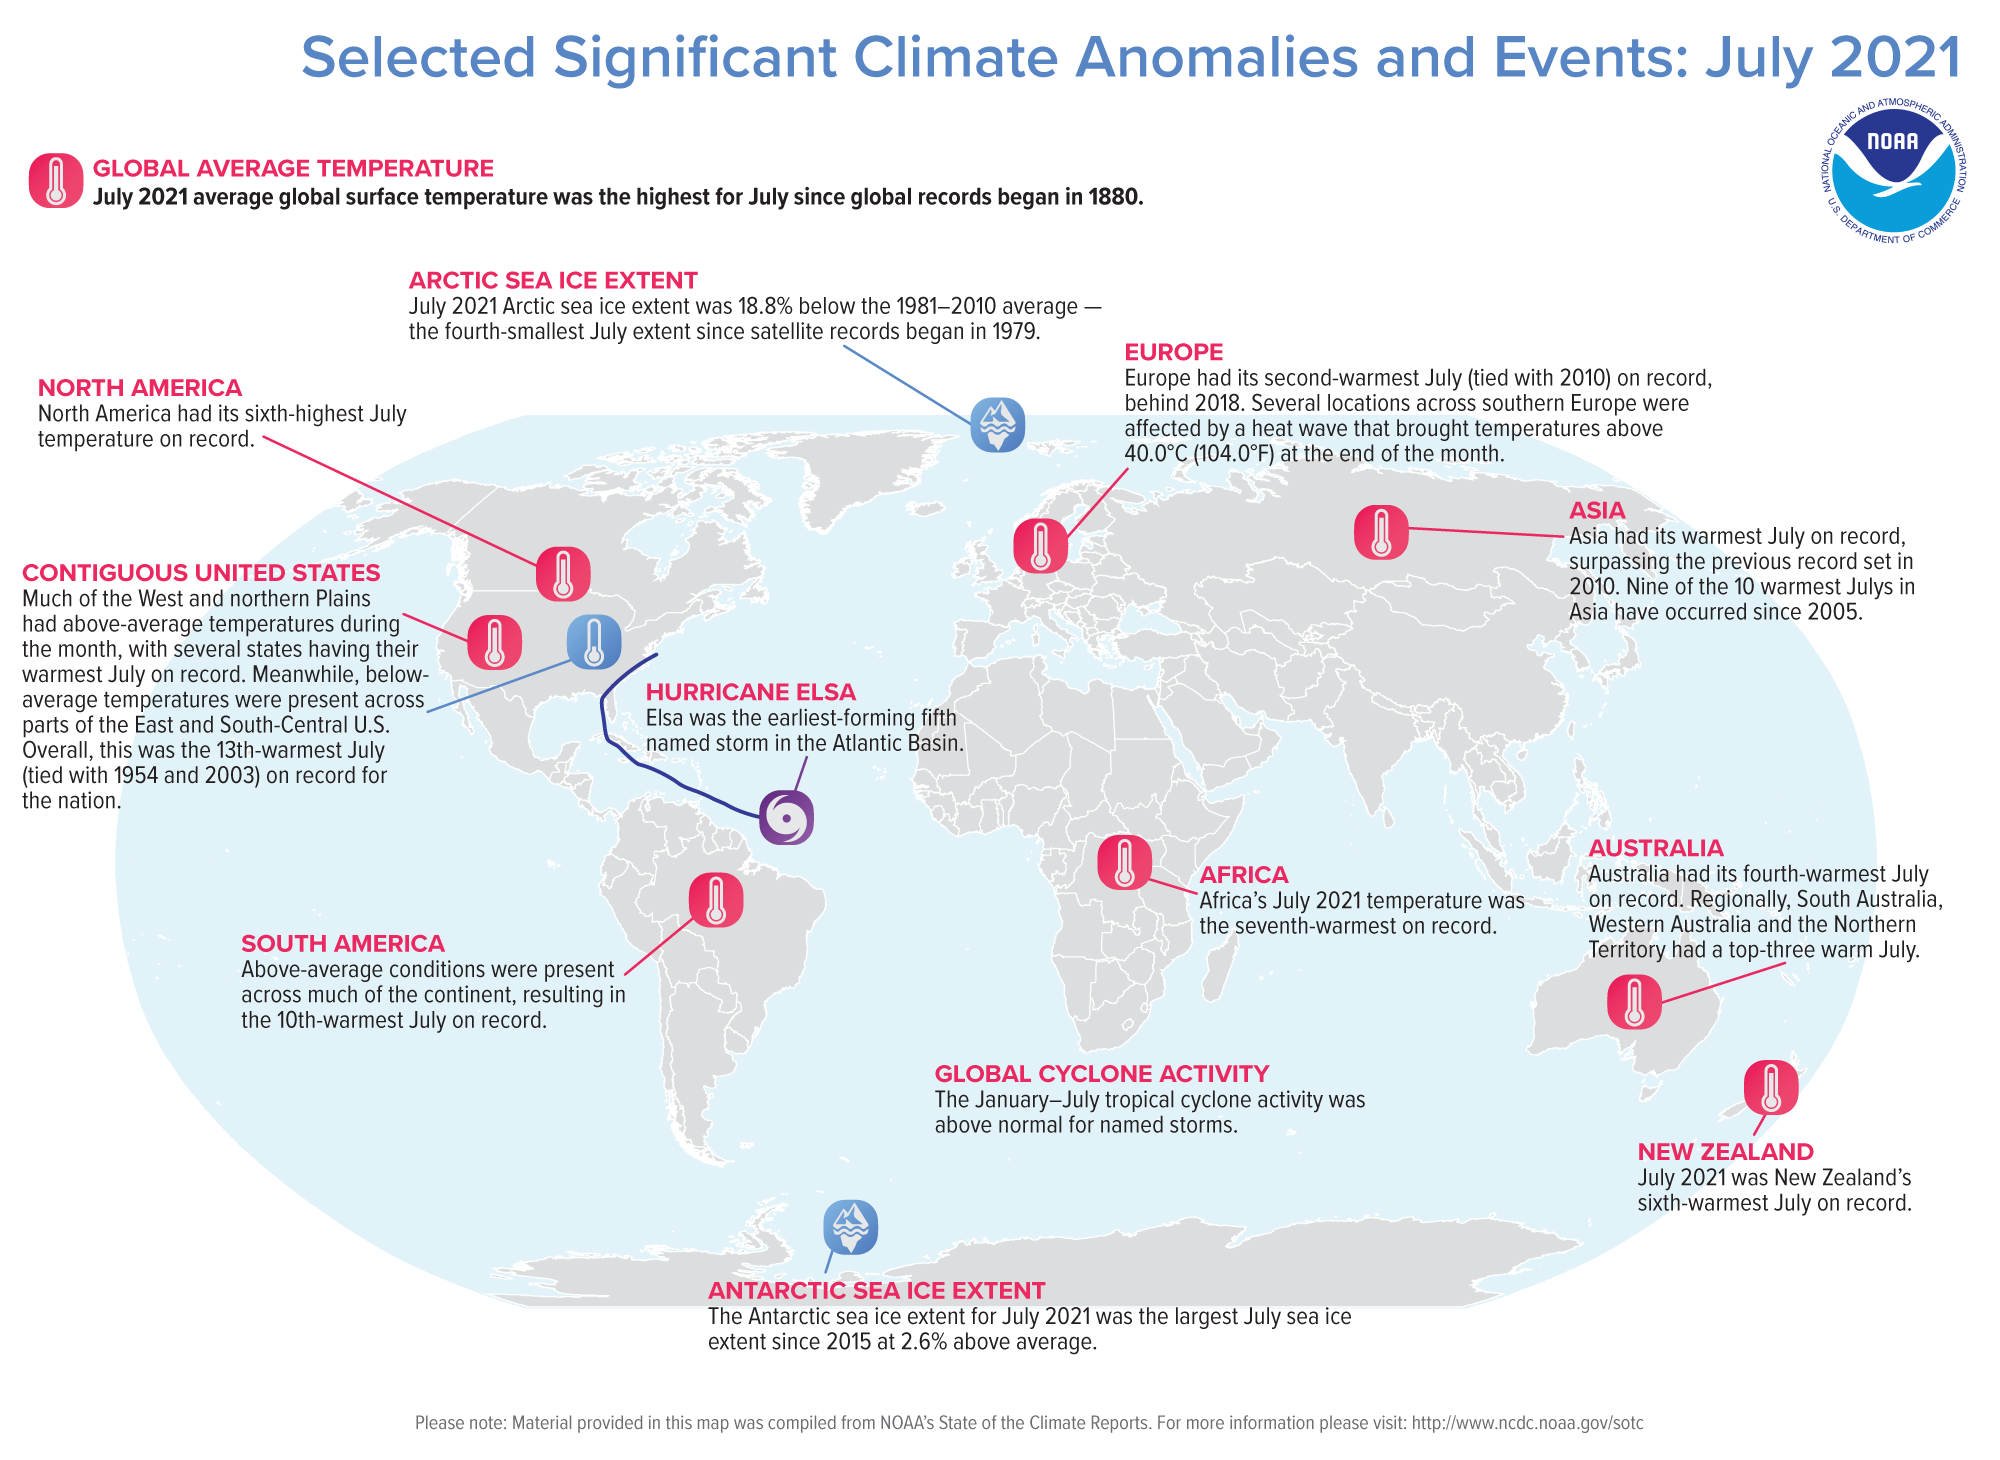 Anomalias climáticas e eventos em julho de 2021 - NOAA